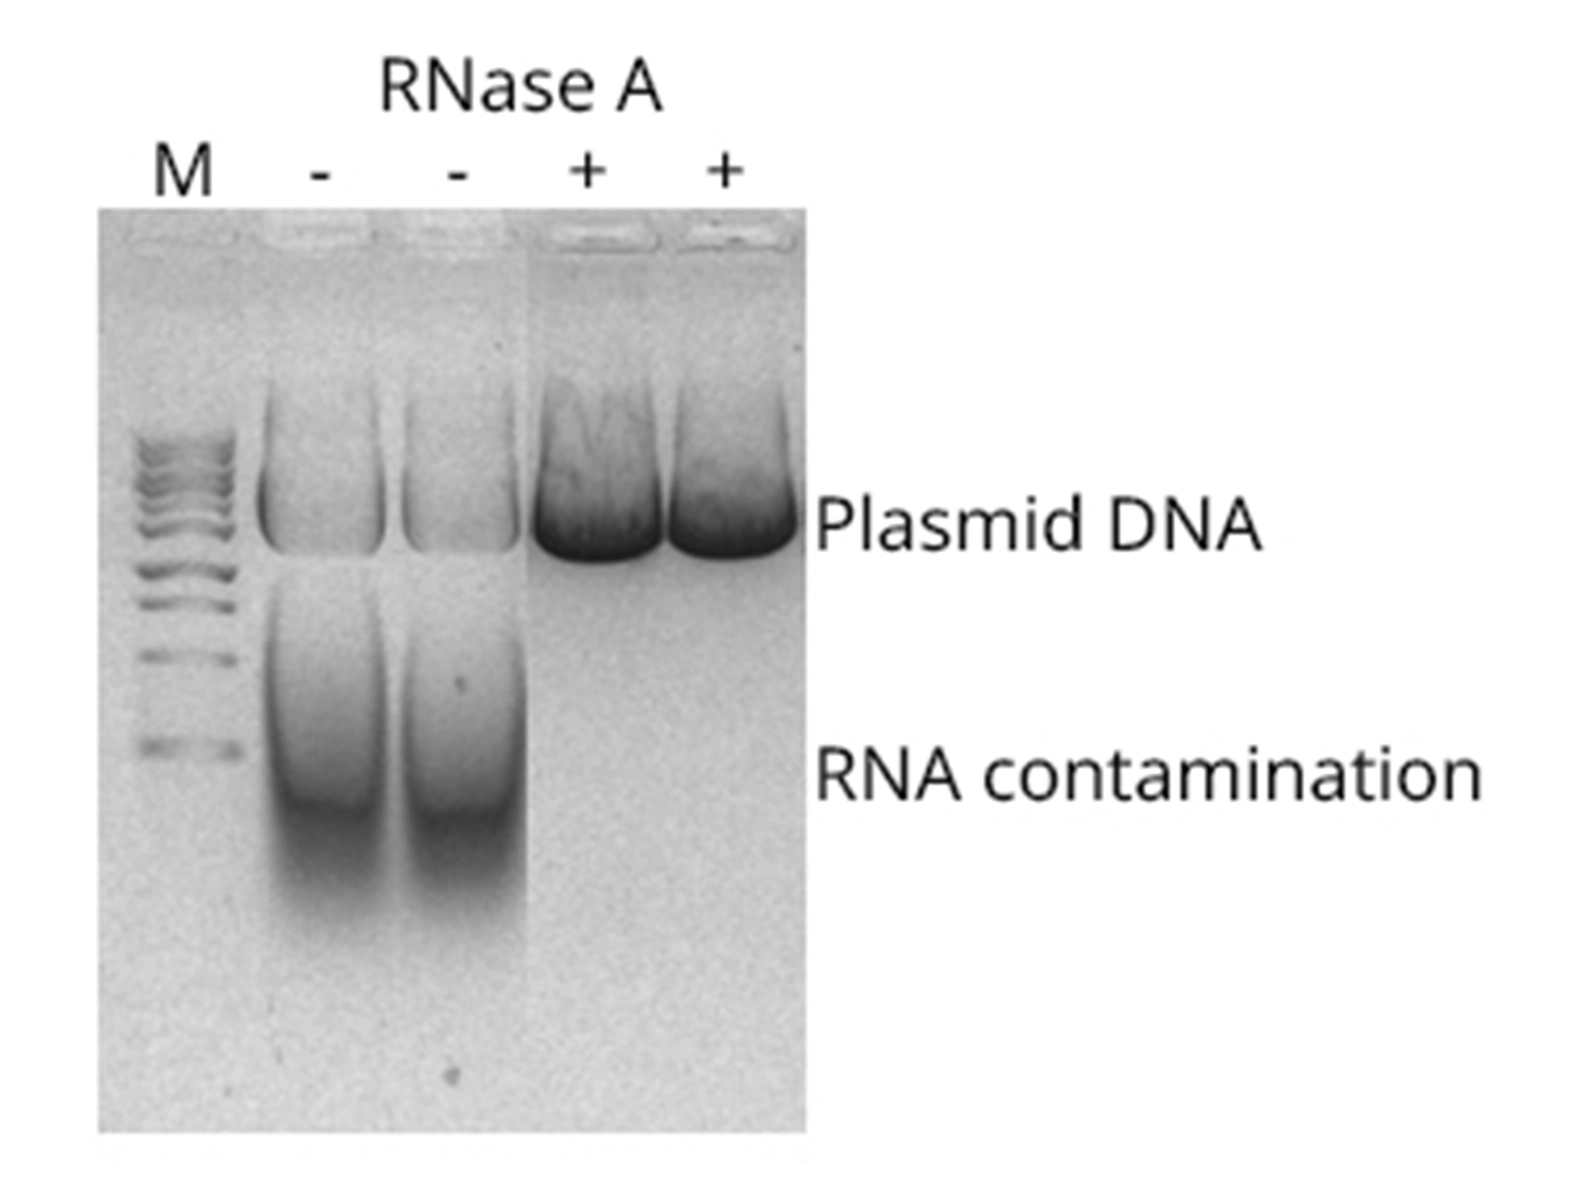 Plasmid Purified using plasmid miniprep